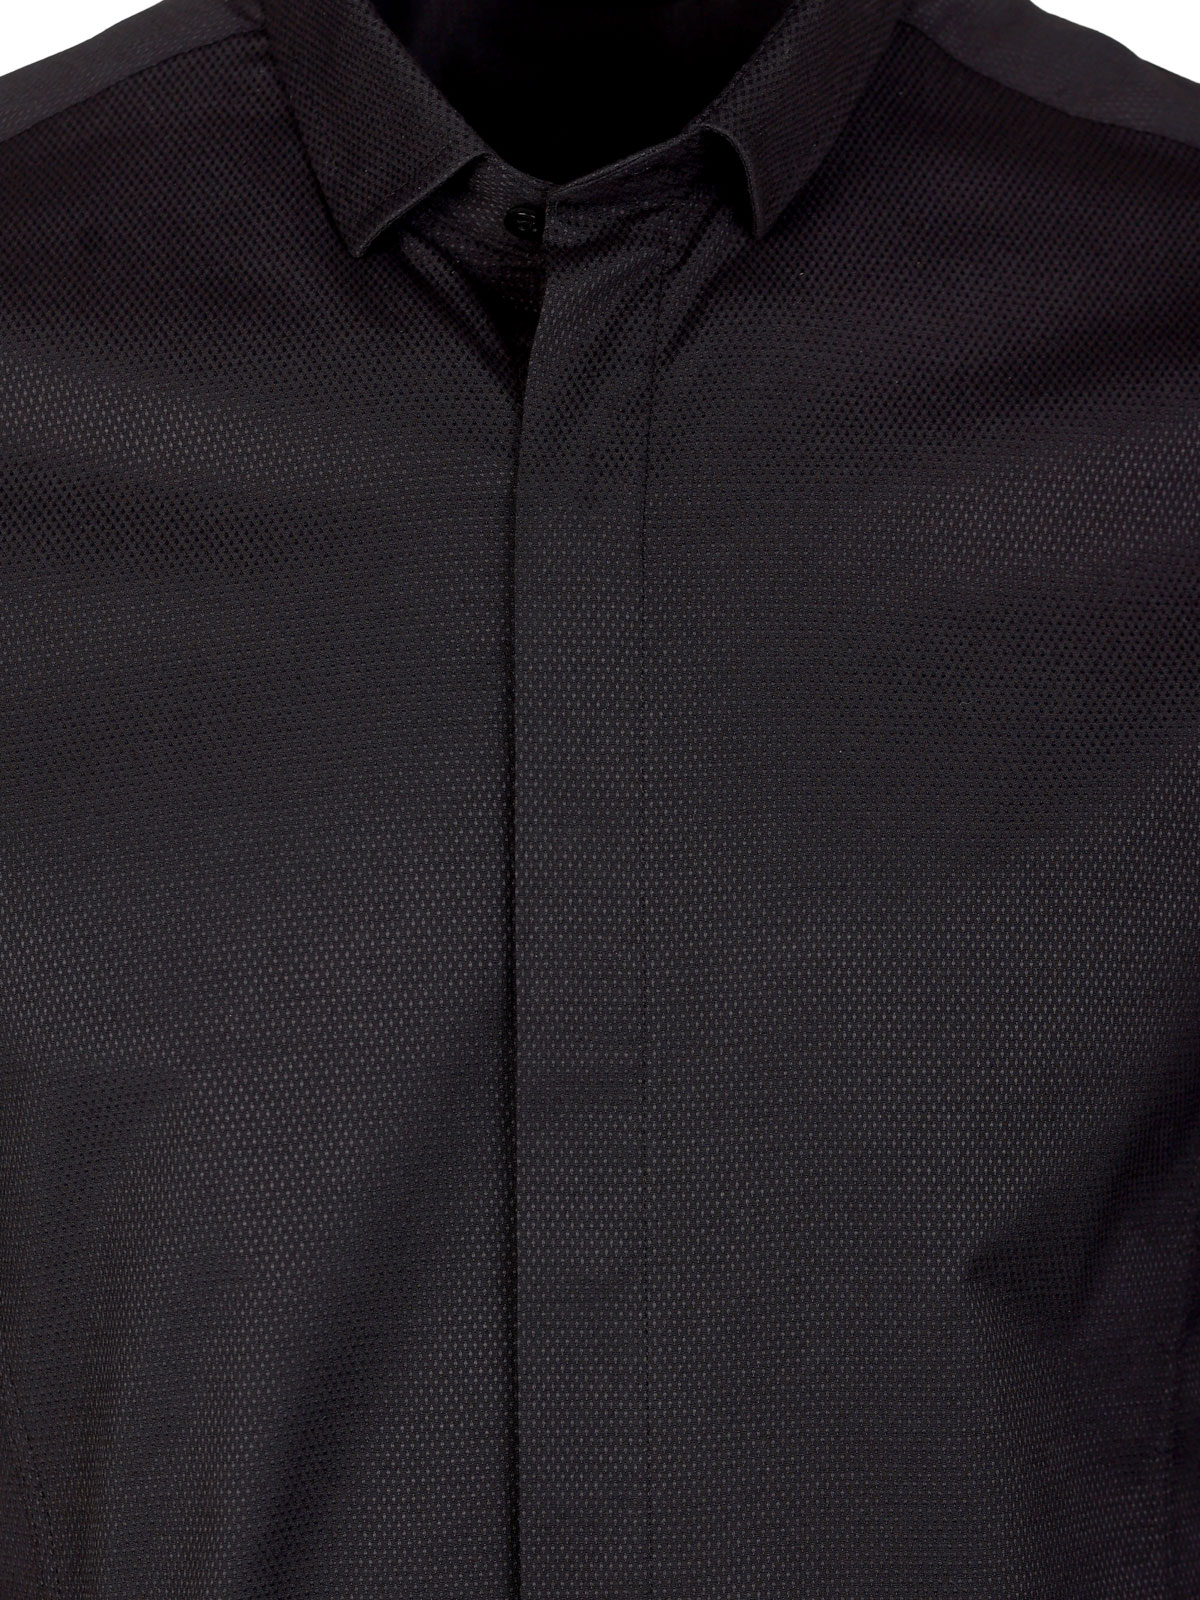 Ανδρικό πουκάμισο σε μαύρο χρώμα - 21609 € 48.37 img3